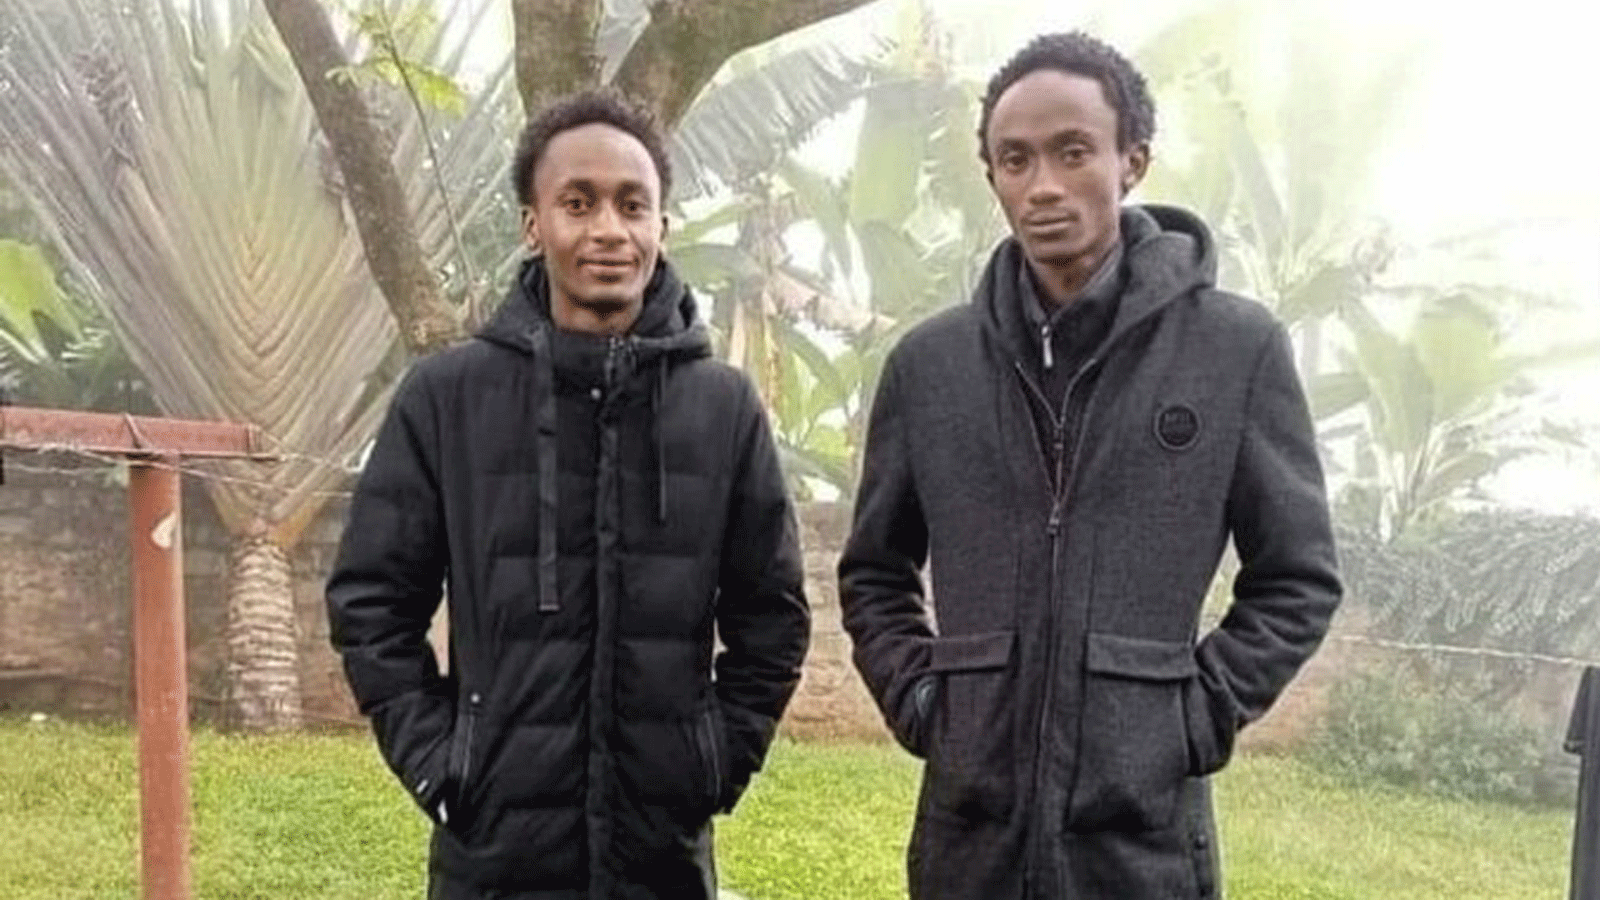 صورة نشرتها صفحة ميسينغ فويسز على تويتر بتاريخ 4 آب/ أغسطس 2021 للشقيقين اللذين زُعِم أنه تم القبض عليهما بعد ساعات حظر التجول، وعُثر عليهما ميتين في أمبو-كينيا. 